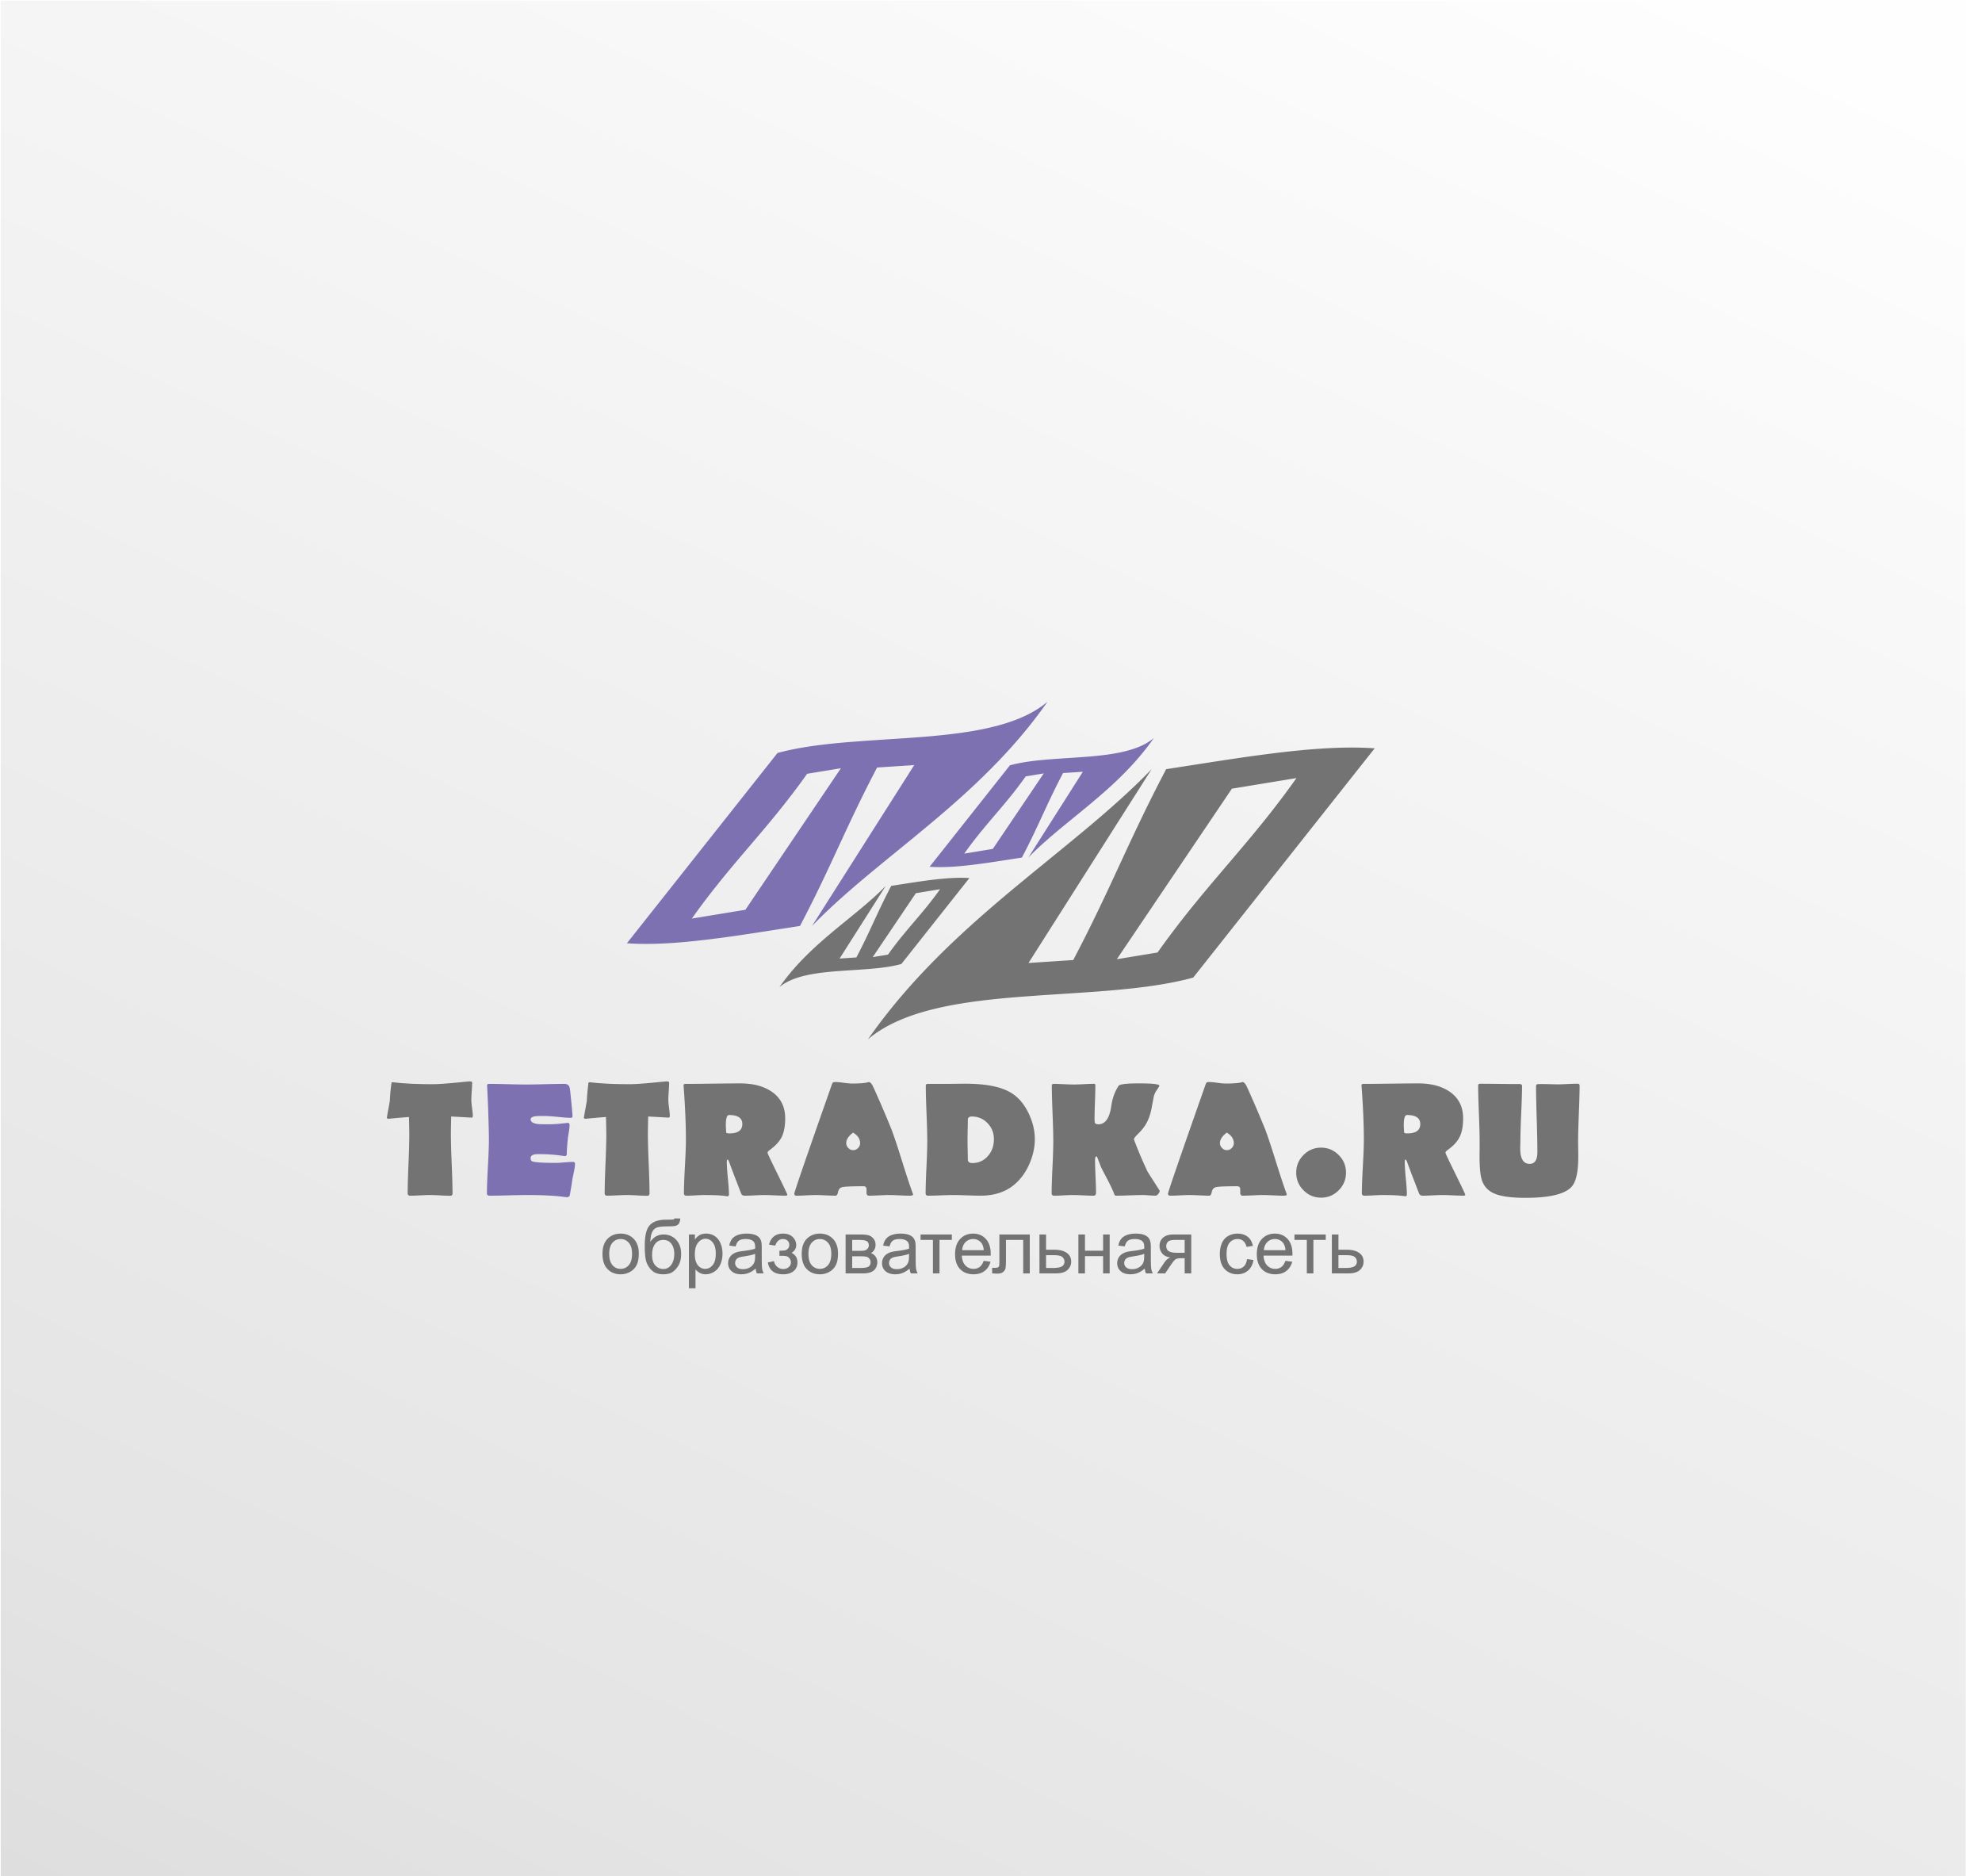 Логотип для образовательной сети tetradka.ru - дизайнер timur2force